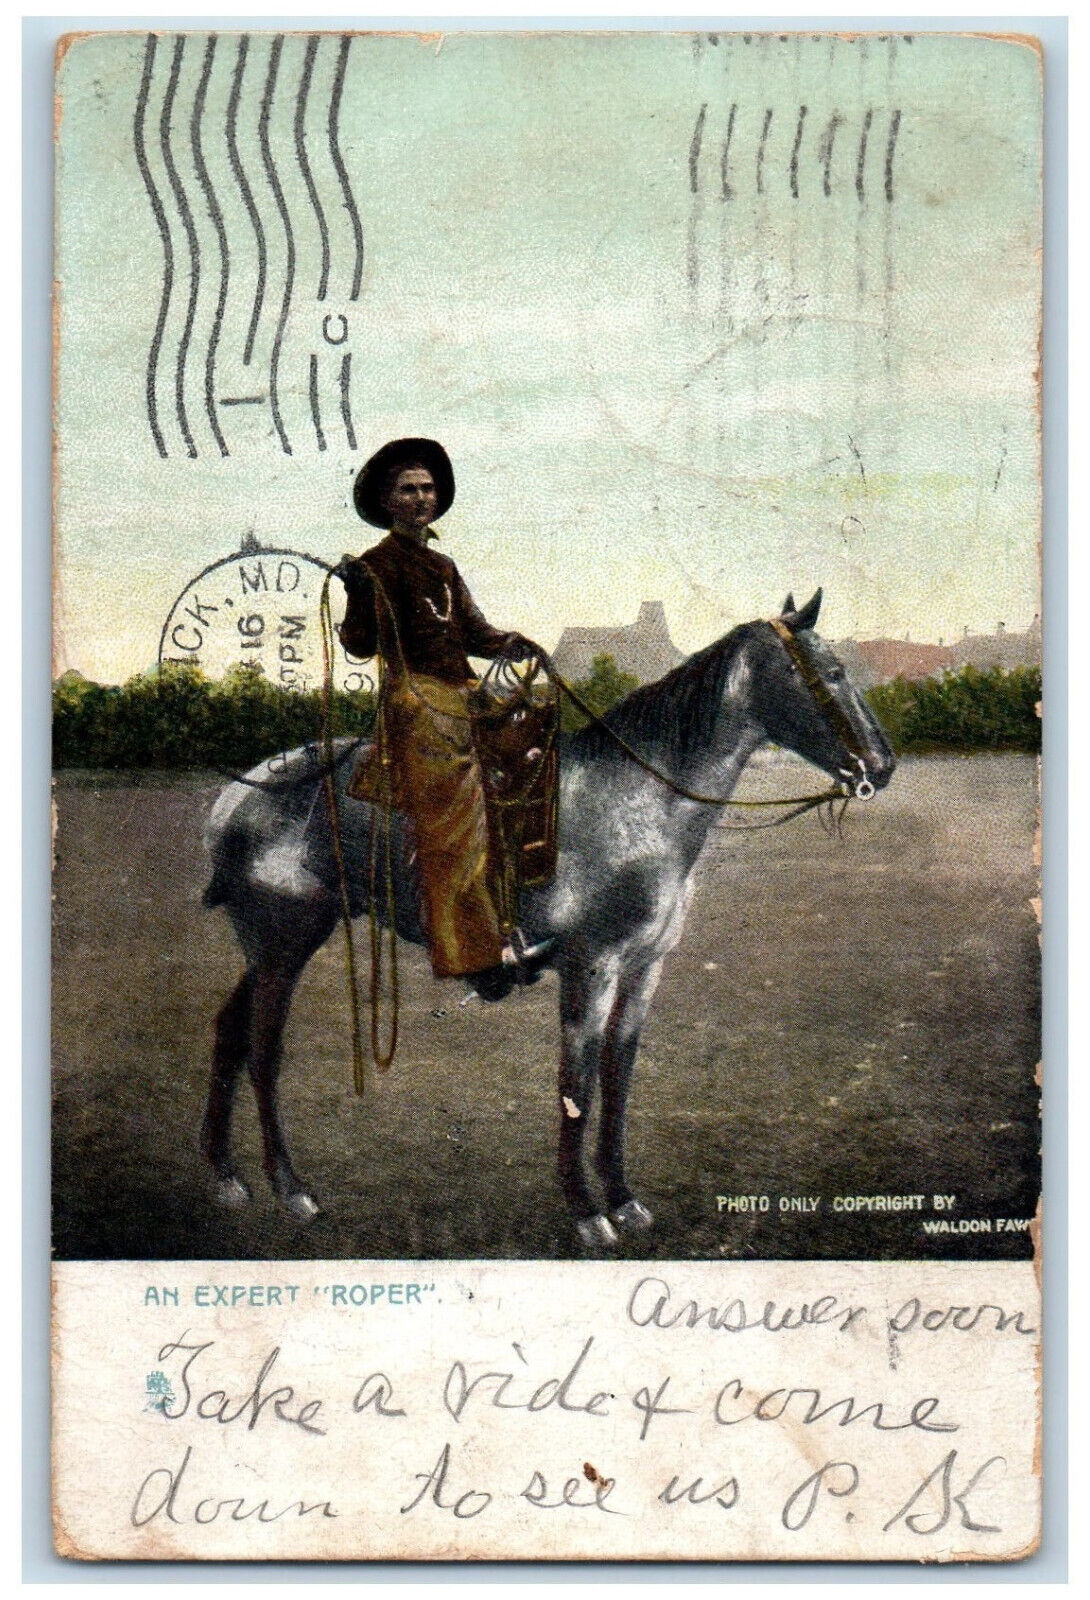 1907 An Expert Roper Middletown MD Brunswick MD Raphotype Tuck Art Postcard